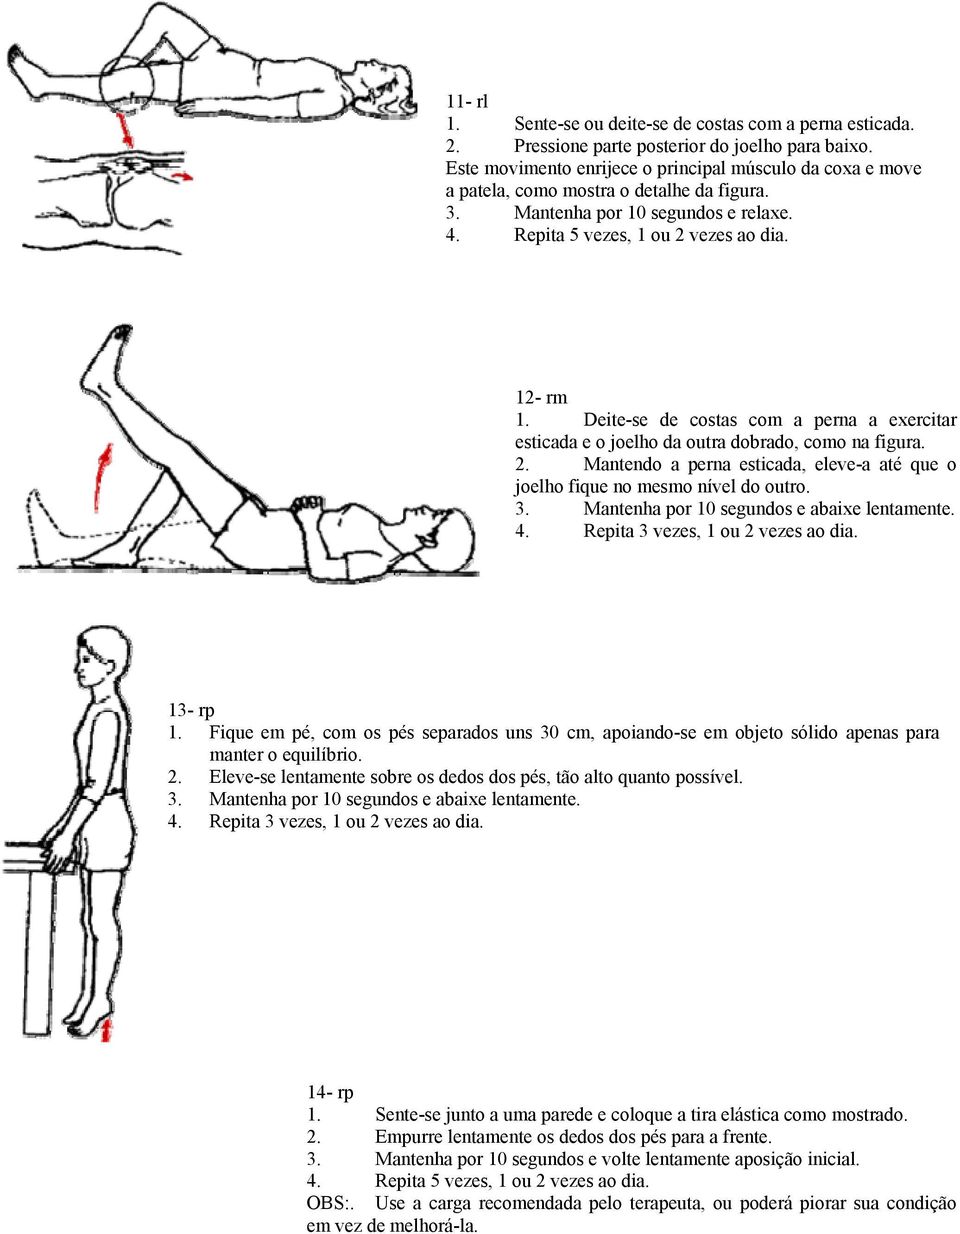 Deite-se de costas com a perna a exercitar esticada e o joelho da outra dobrado, como na figura. 2. Mantendo a perna esticada, eleve-a até que o joelho fique no mesmo nível do outro. 3.